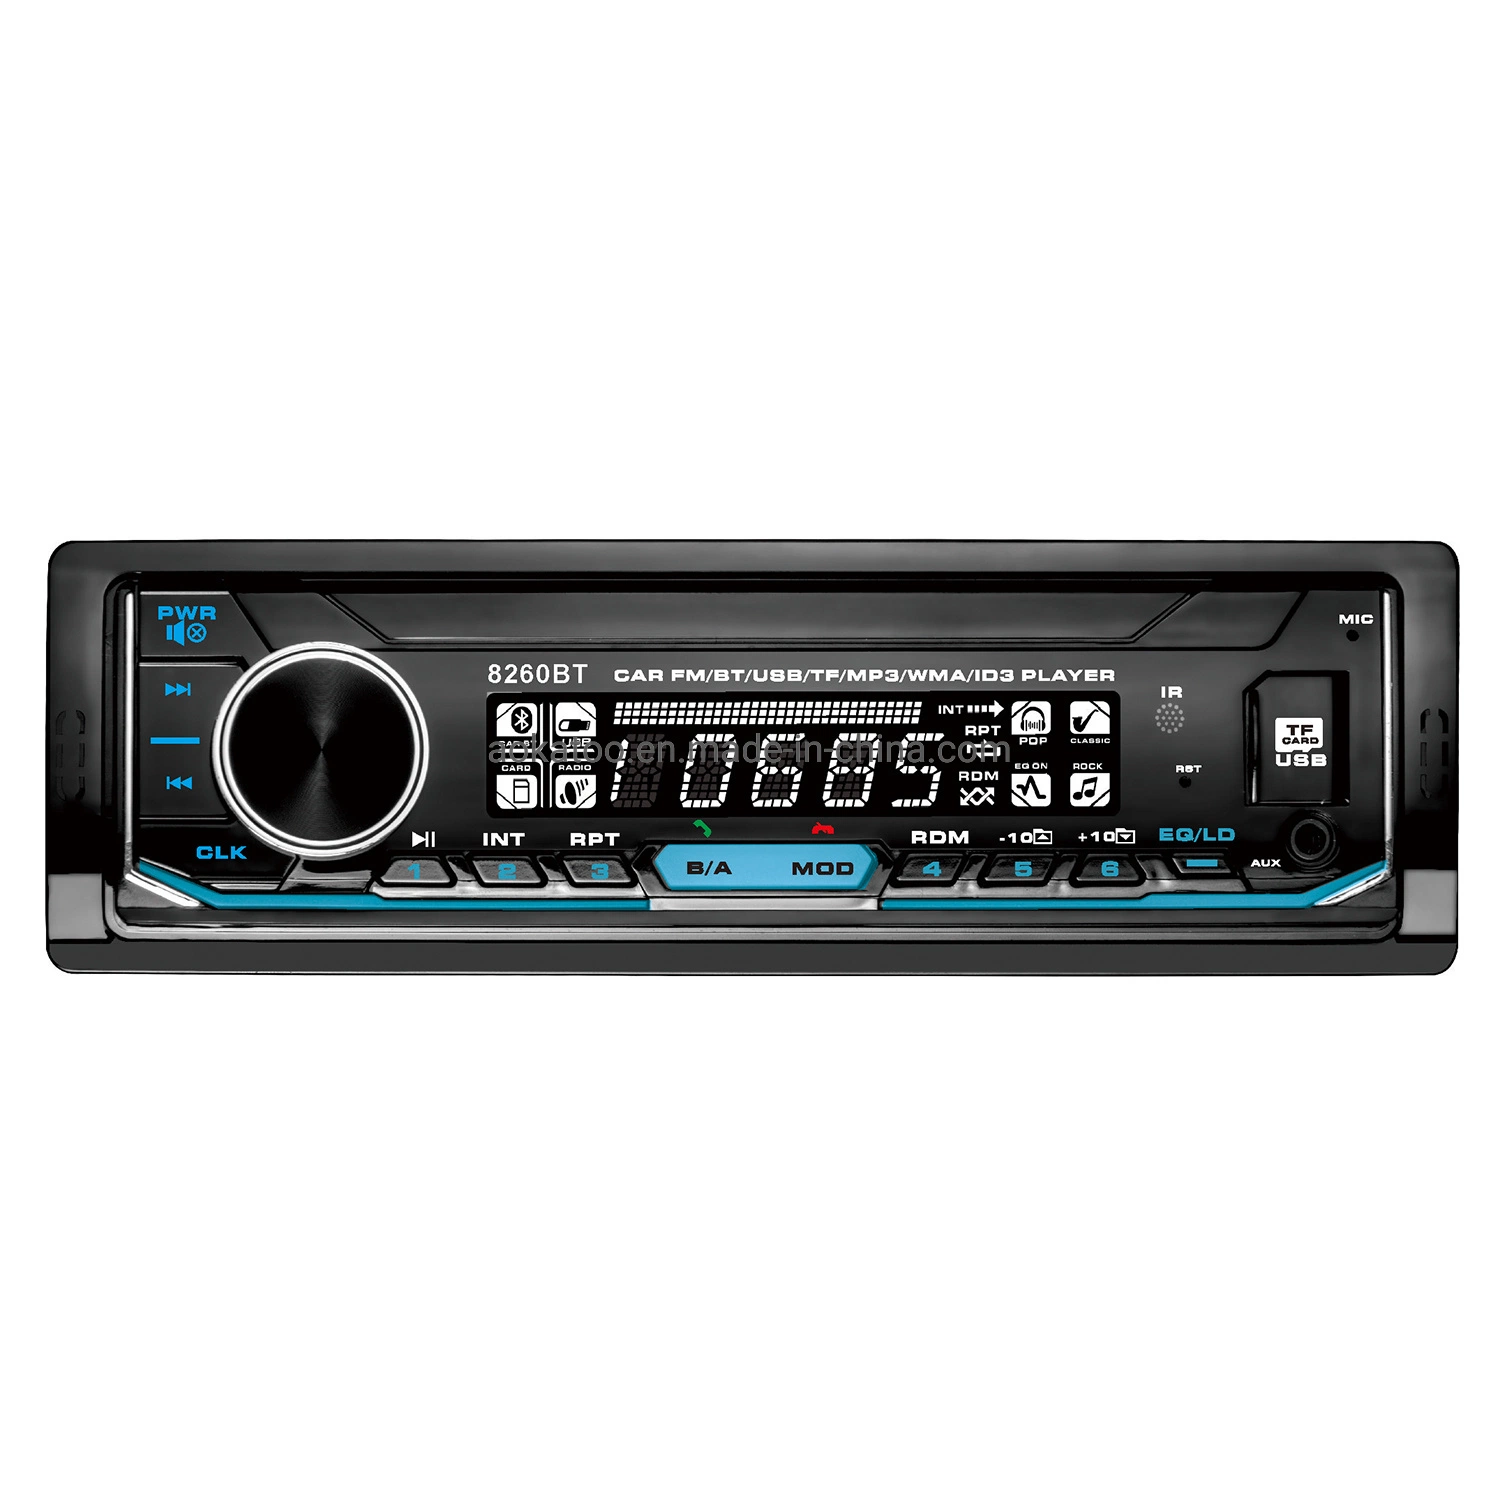 Carro Digital Stereo MP3 com suporte audio player de vídeo